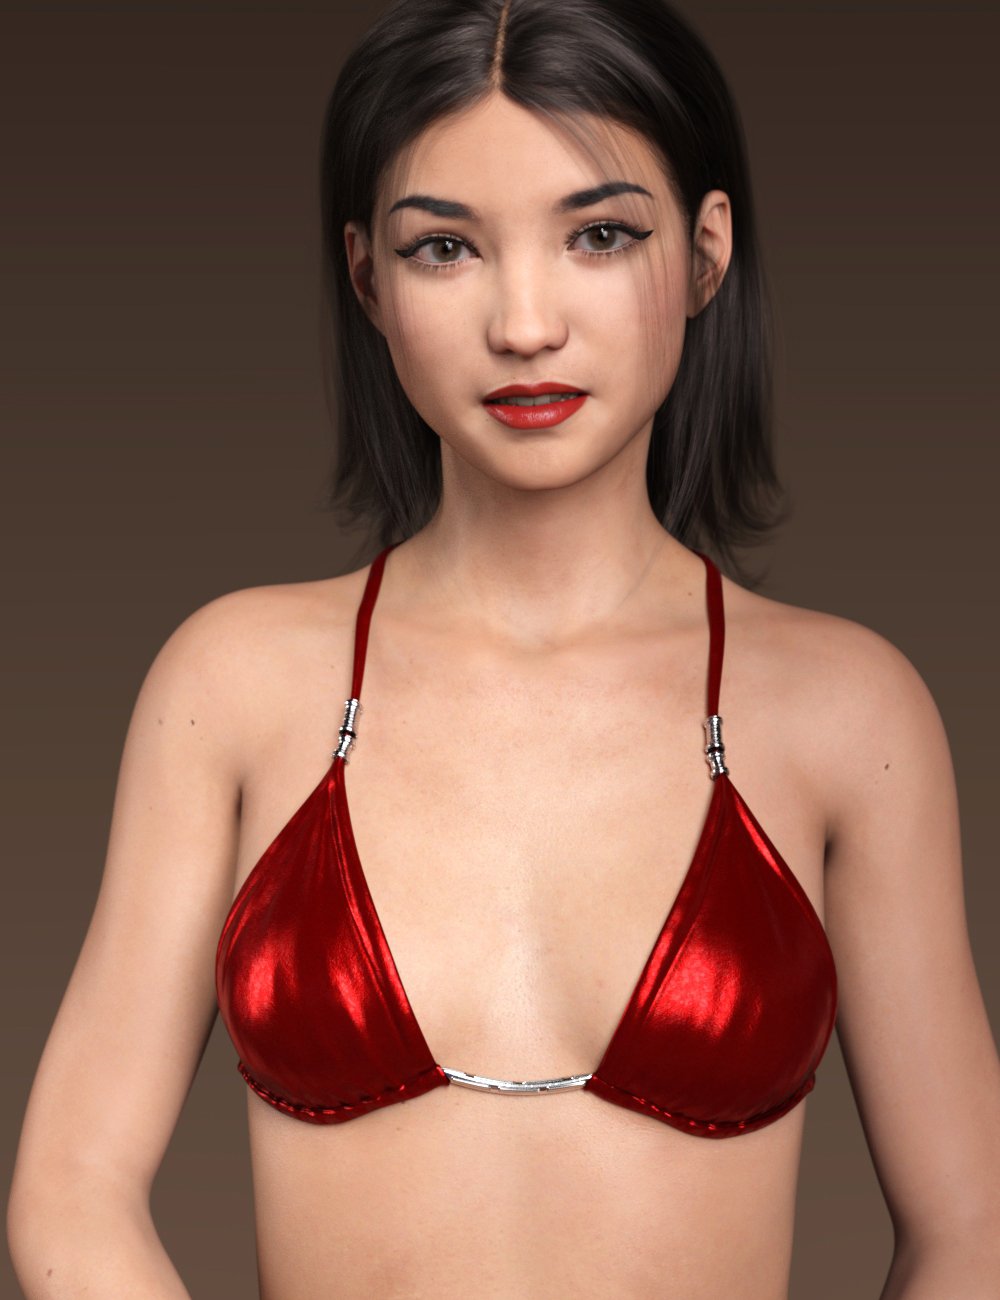 RY Aera for Genesis 8.1 Female by: Raiya, 3D Models by Daz 3D